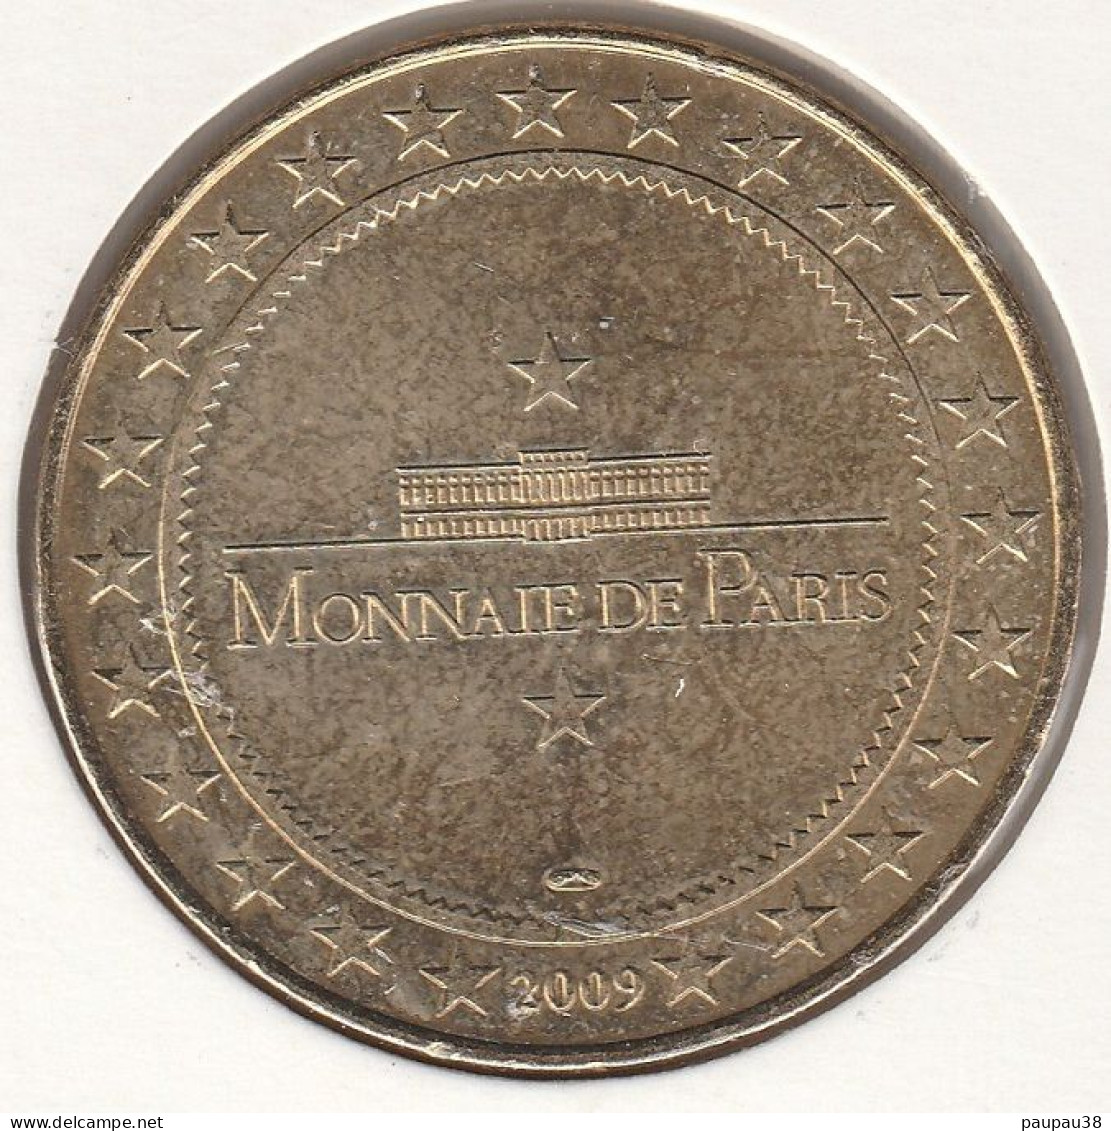 MONNAIE DE PARIS 2009 - 37 ST-CYR-SUR-LOIRE XIIIème Bourse Numismatique & Collection - 2009